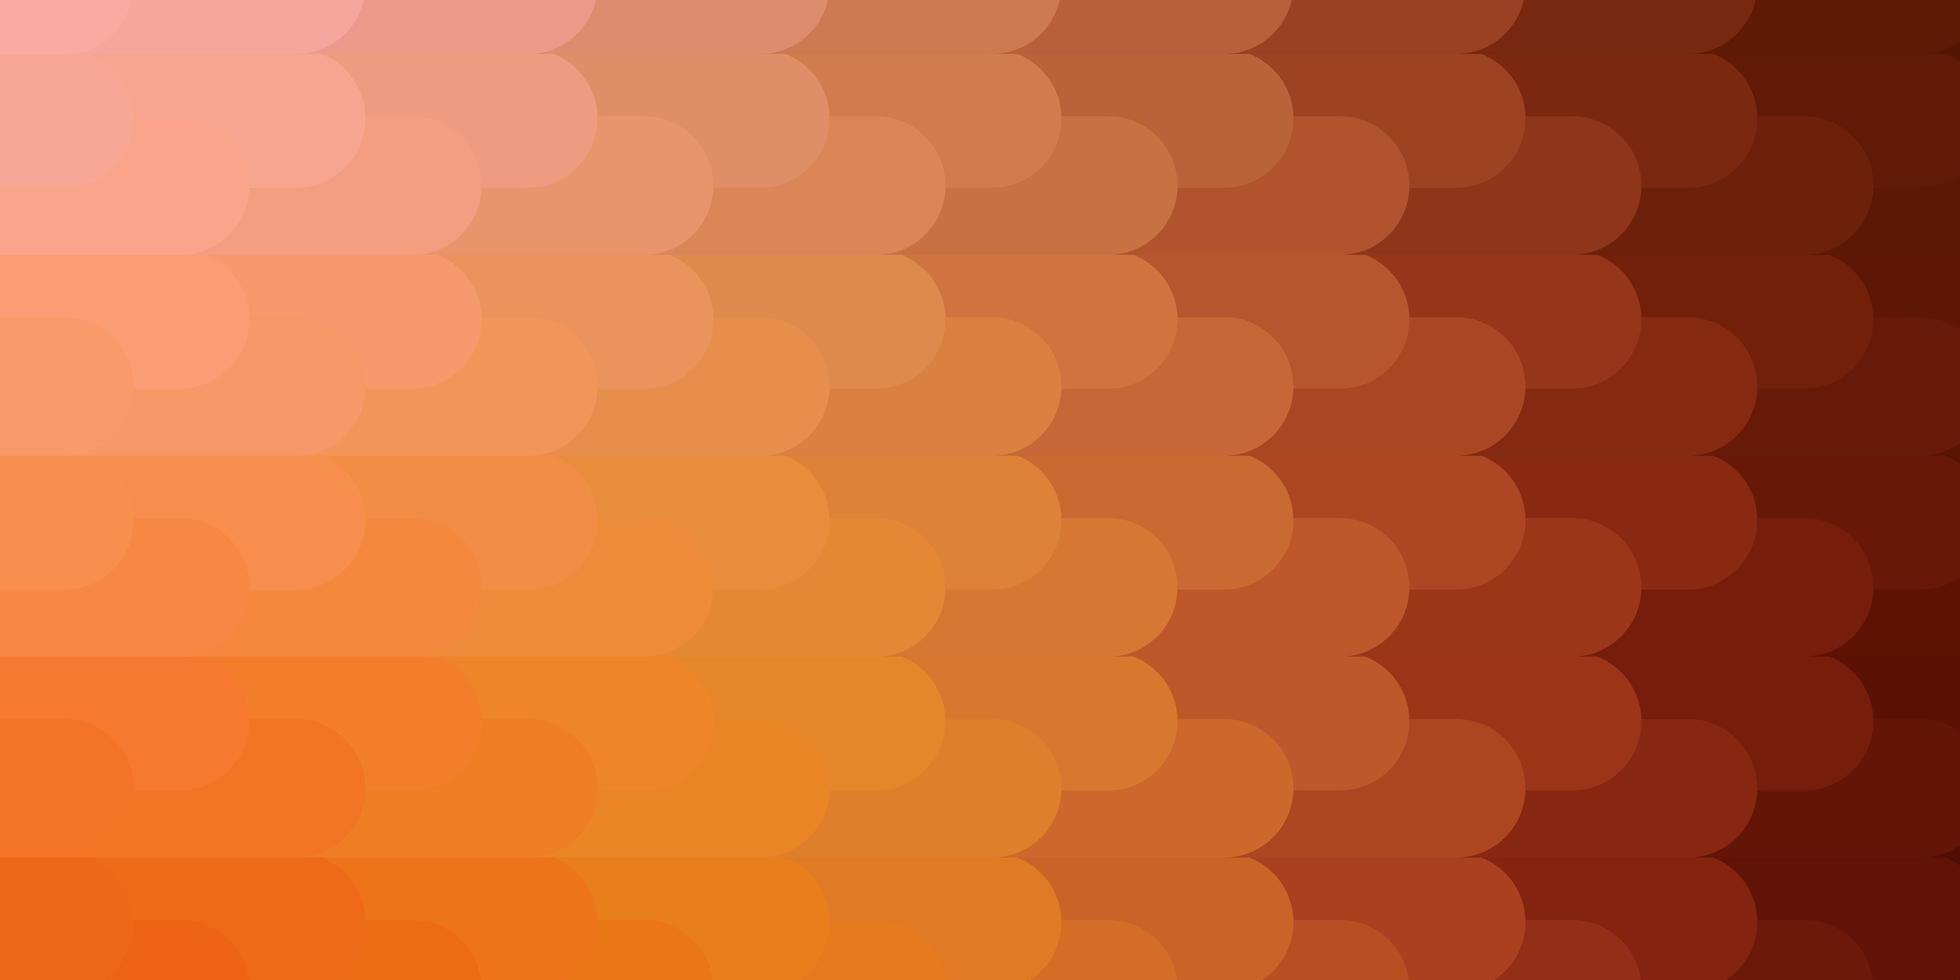 sfondo vettoriale arancione chiaro con linee. illustrazione gradiente colorato con linee piatte astratte. modello per il tuo design dell'interfaccia utente.